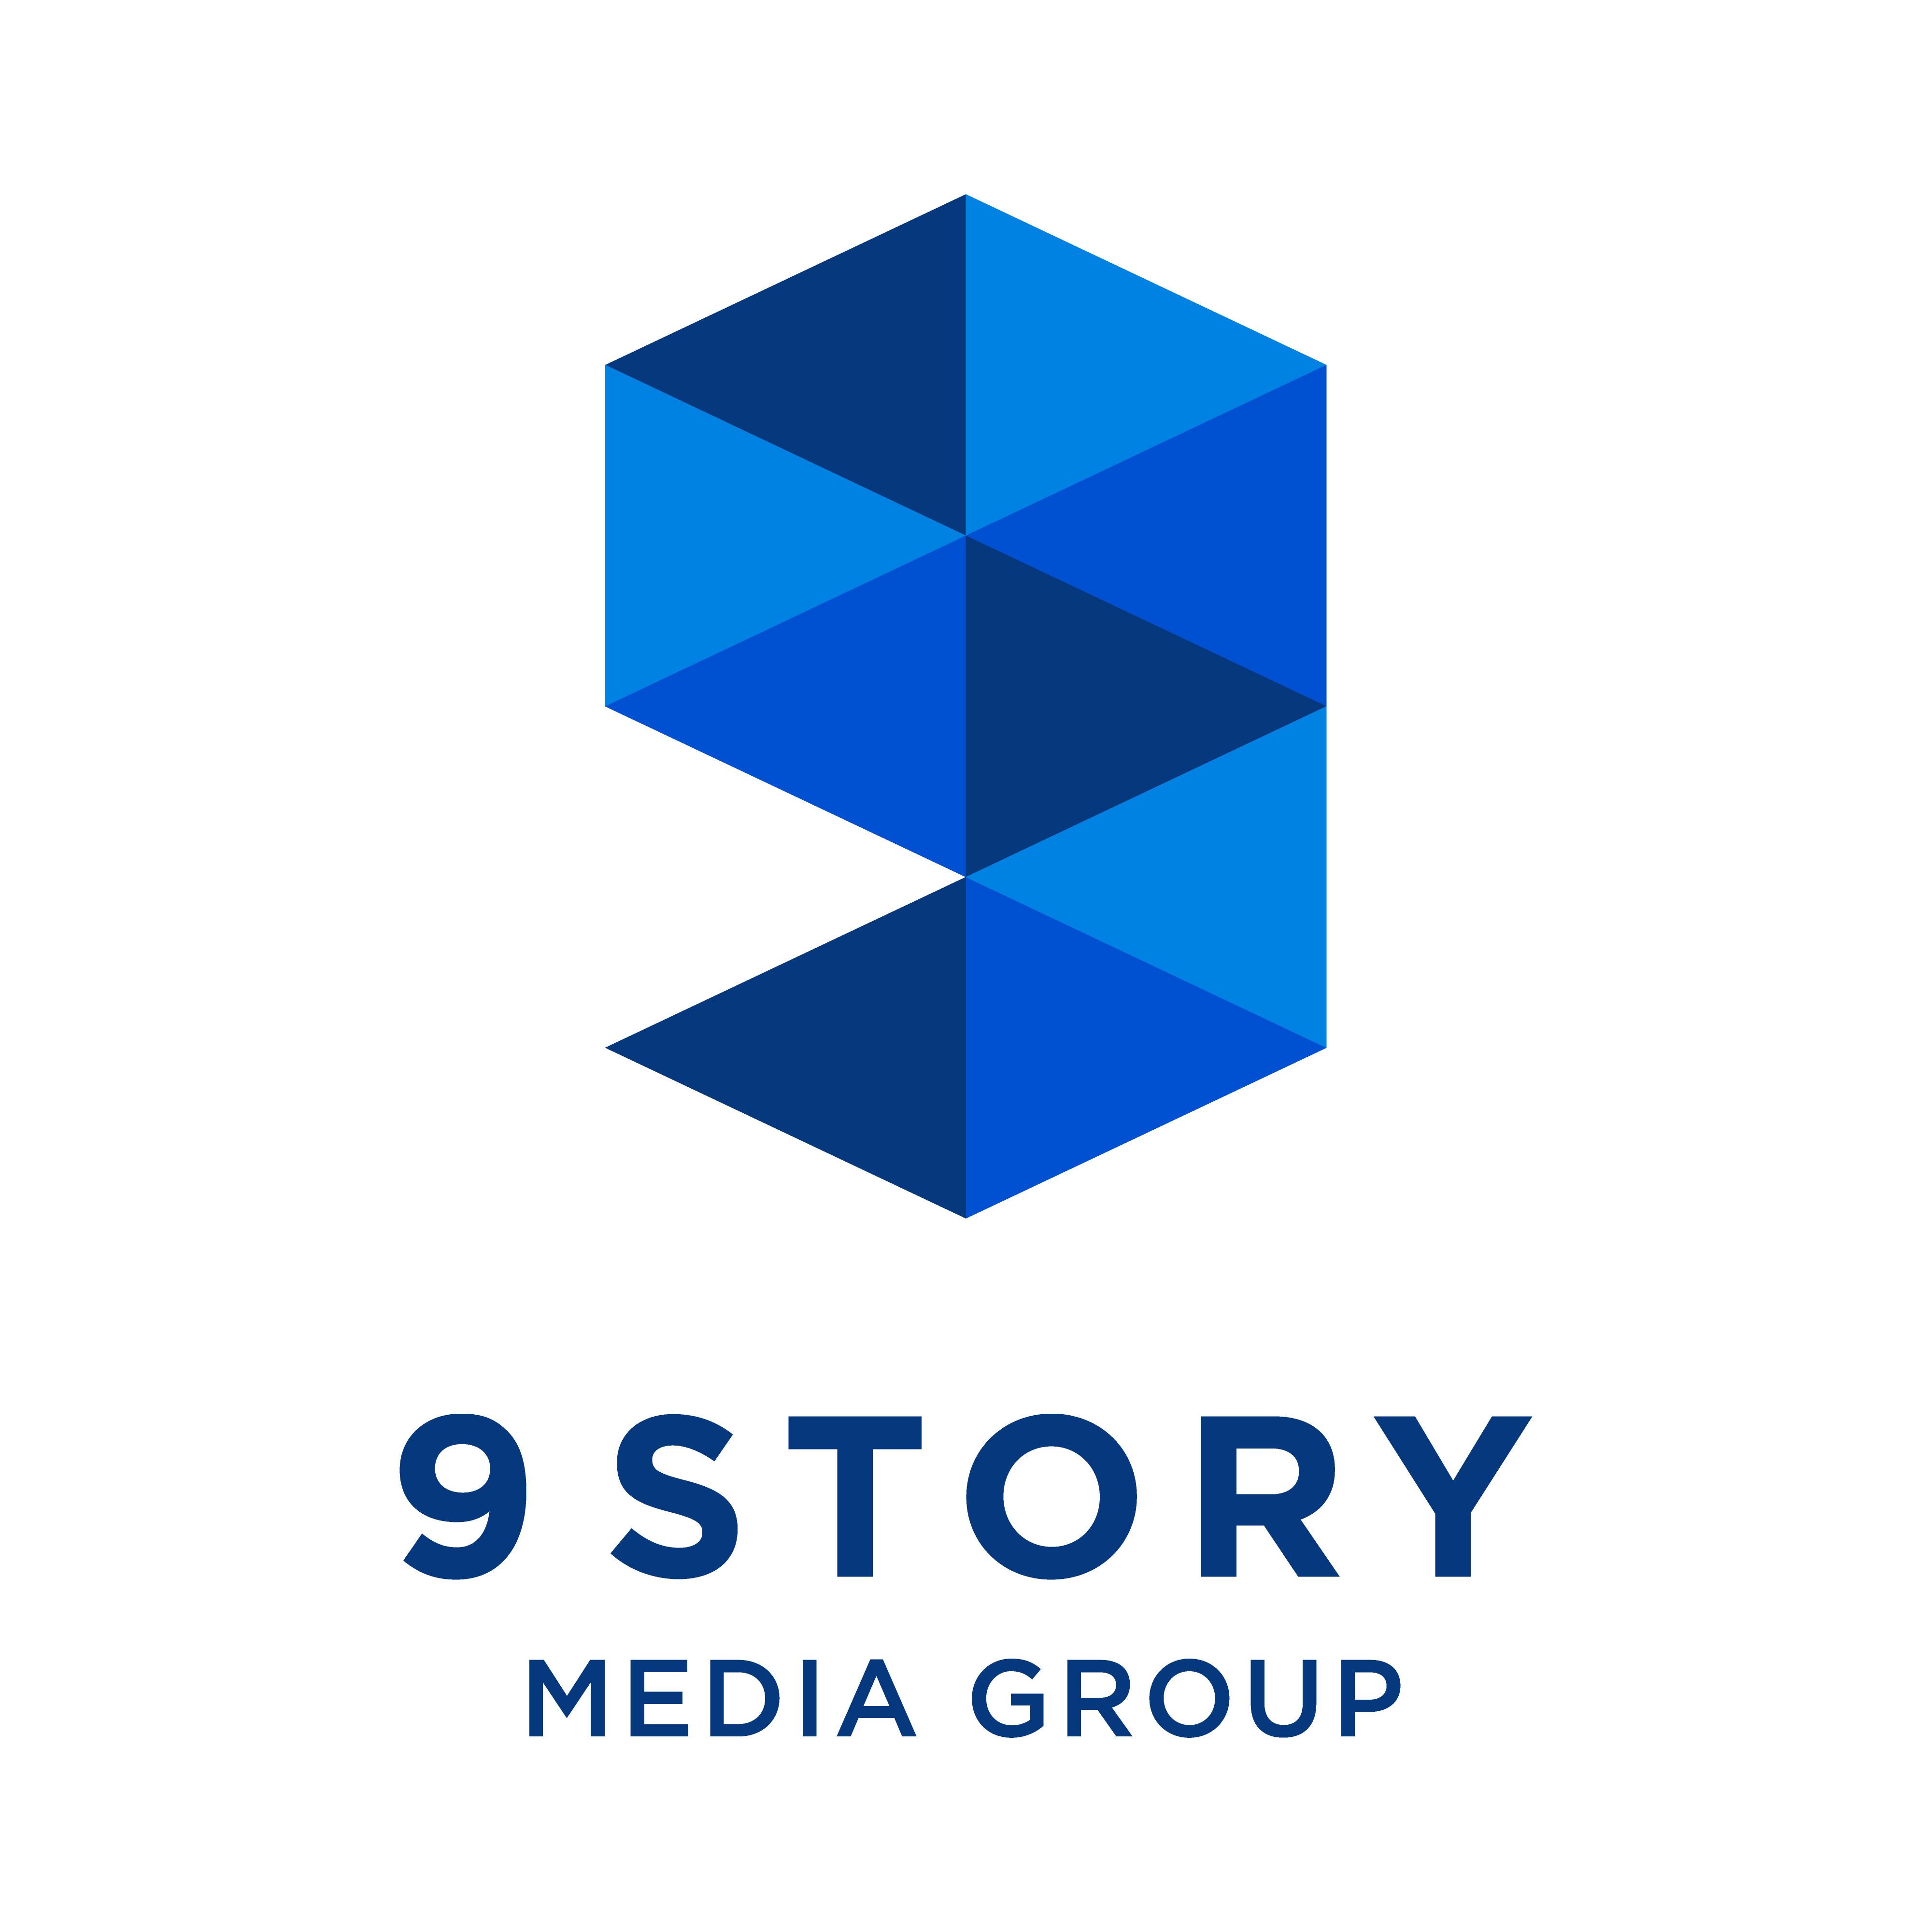 9 Story Media Group Appoints Katrina Hitz-Tough as SVP, Franchise Strategy & Marketing  